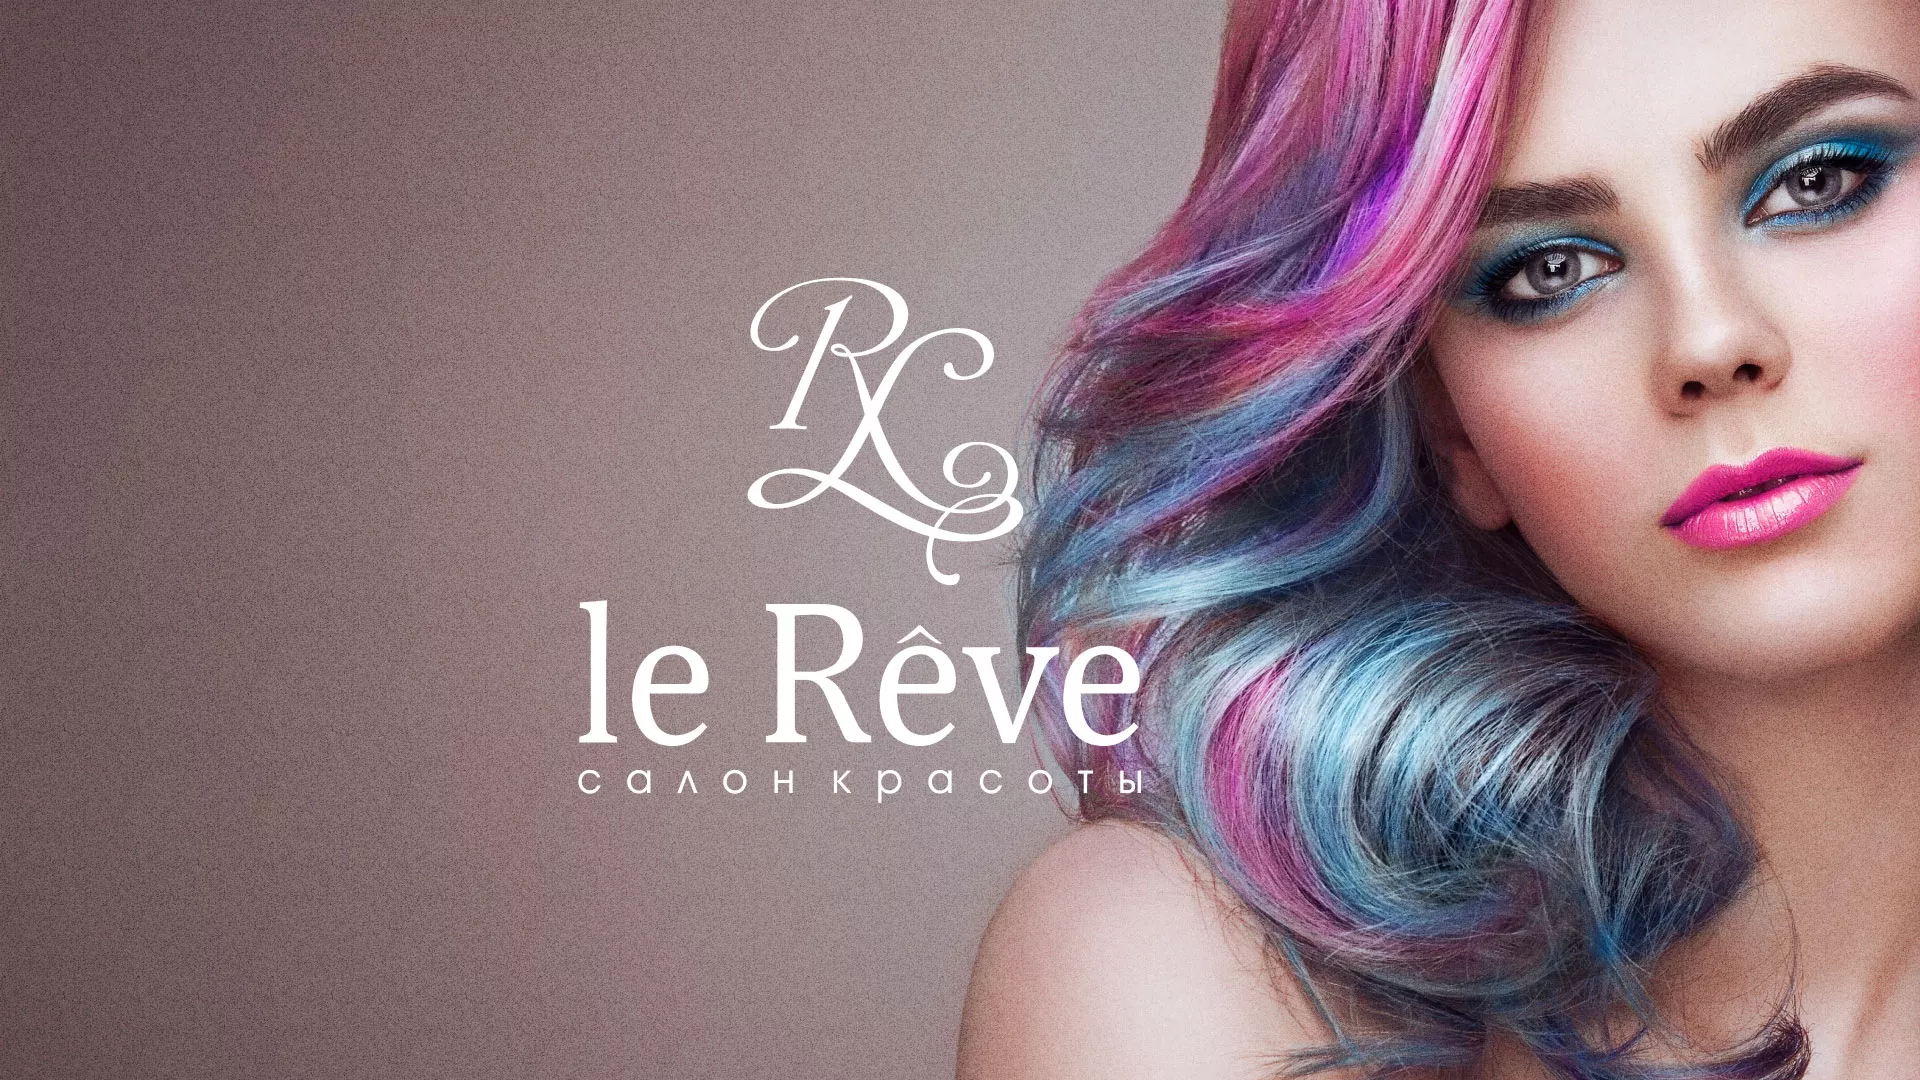 Создание сайта для салона красоты «Le Reve» в Зеленограде